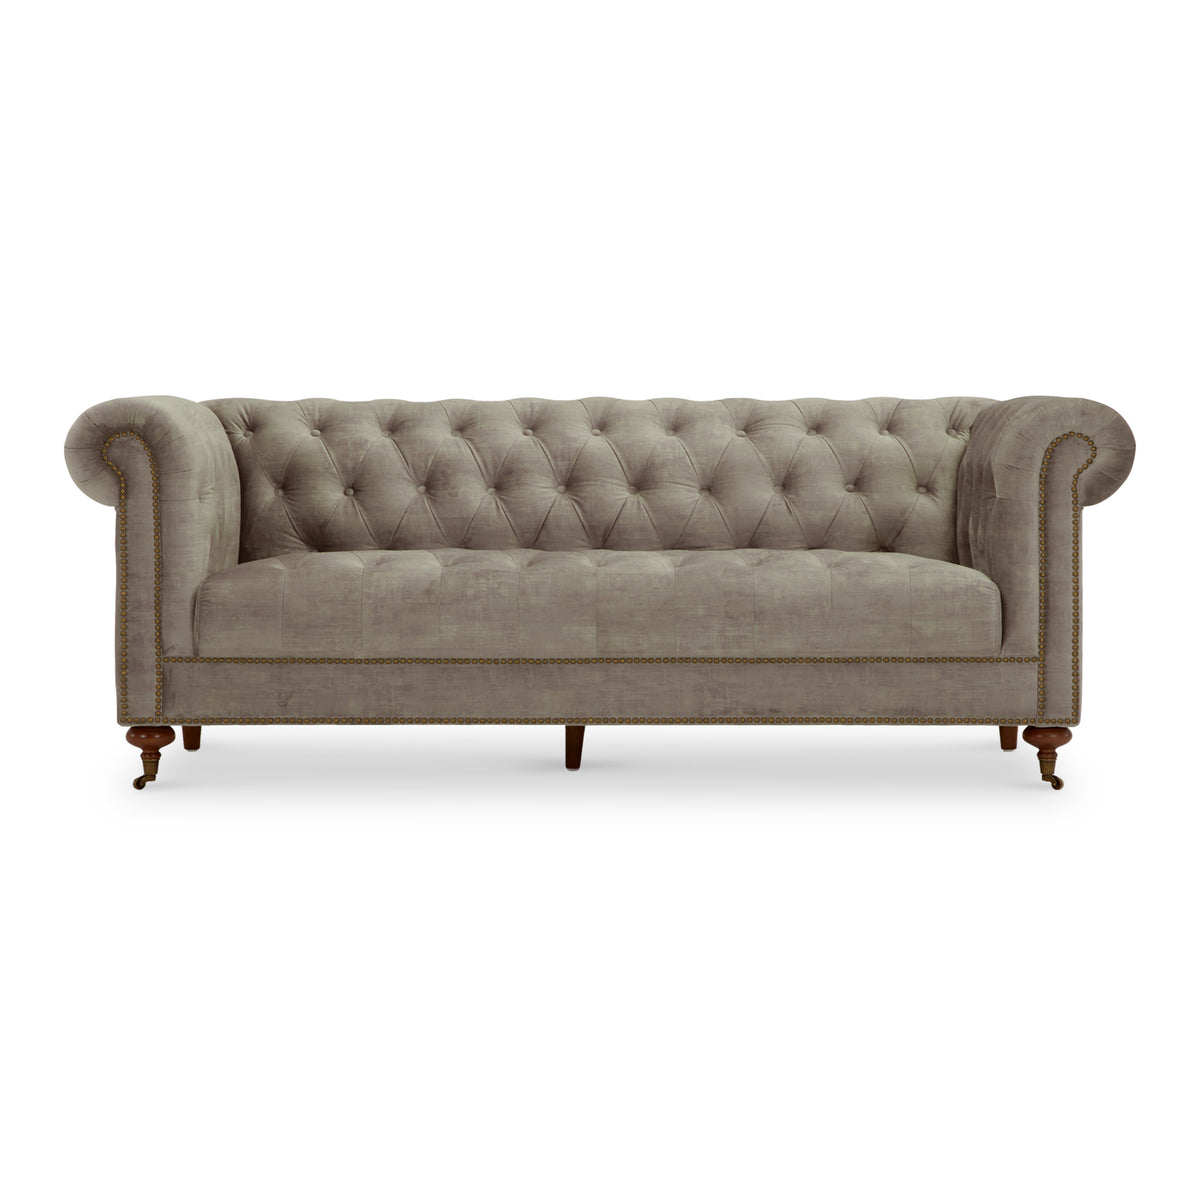 Stanhope Mink Velvet 3 Seater Sofa from Roseland Furniture